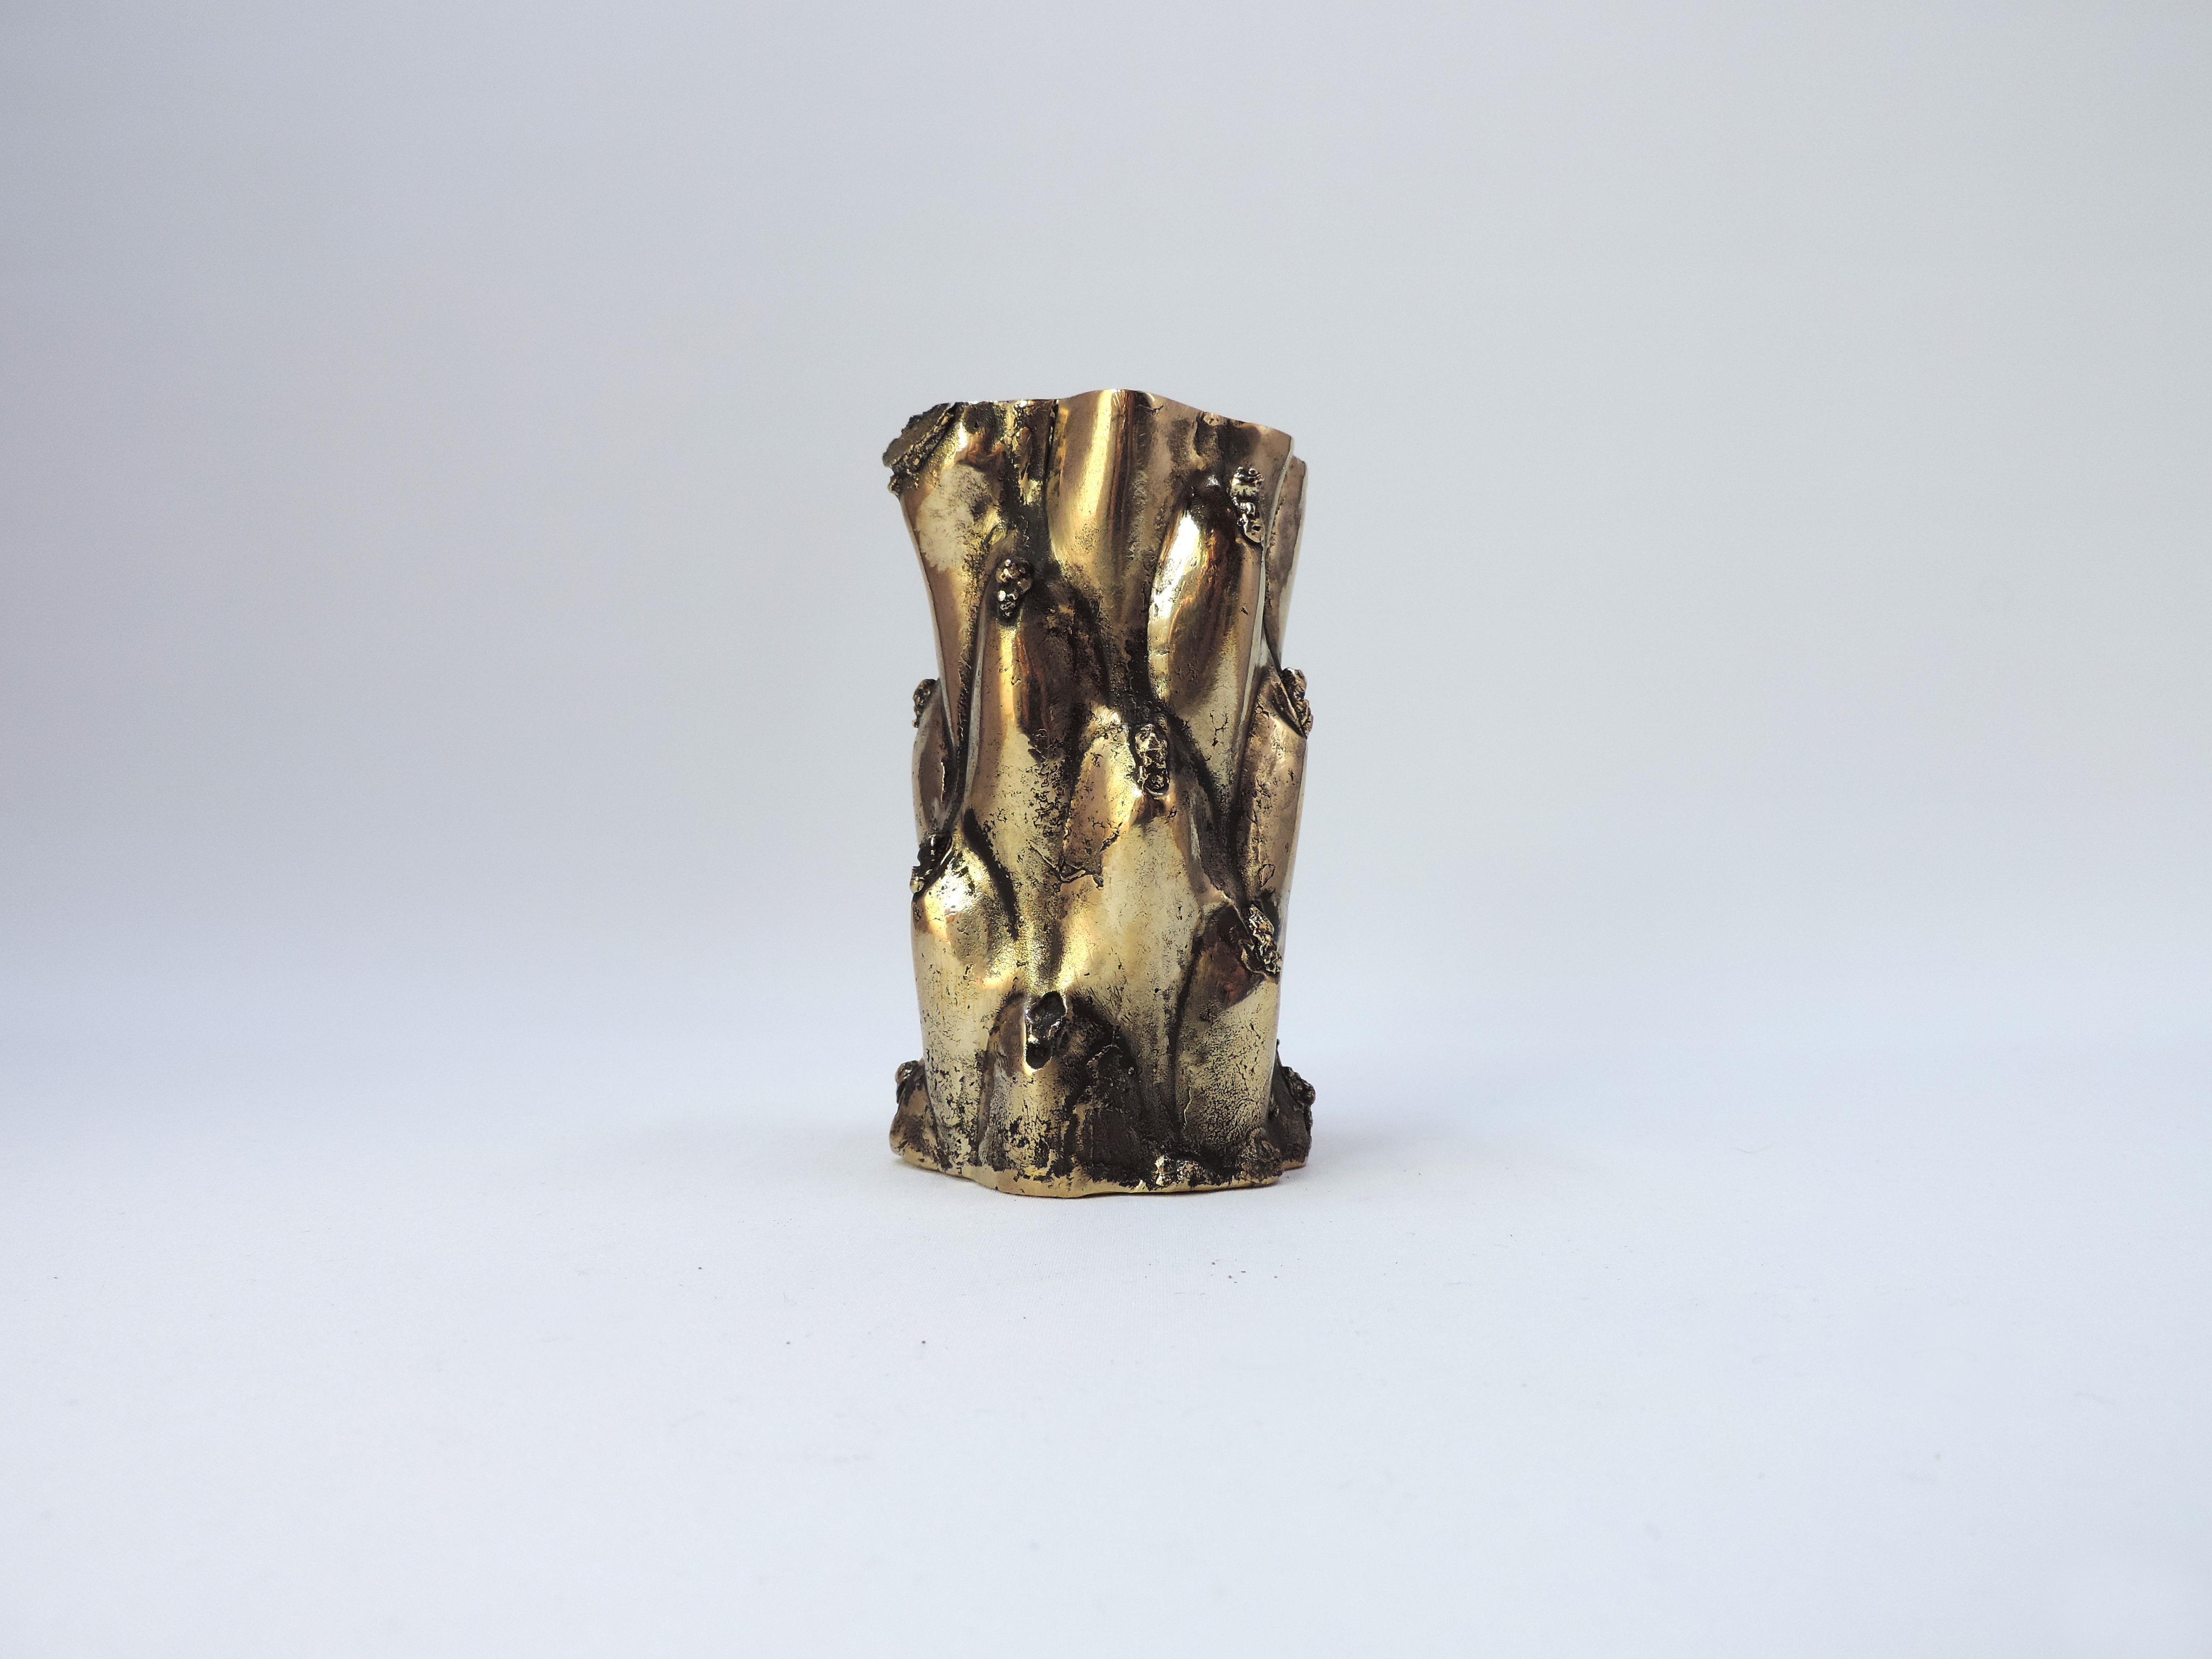 Vase Cactus réalisé en bronze poli par le designer français Fabien Barrero - Carsenat. Un certificat d'authenticité est délivré par la galerie. 

Dimensions : D 2,1